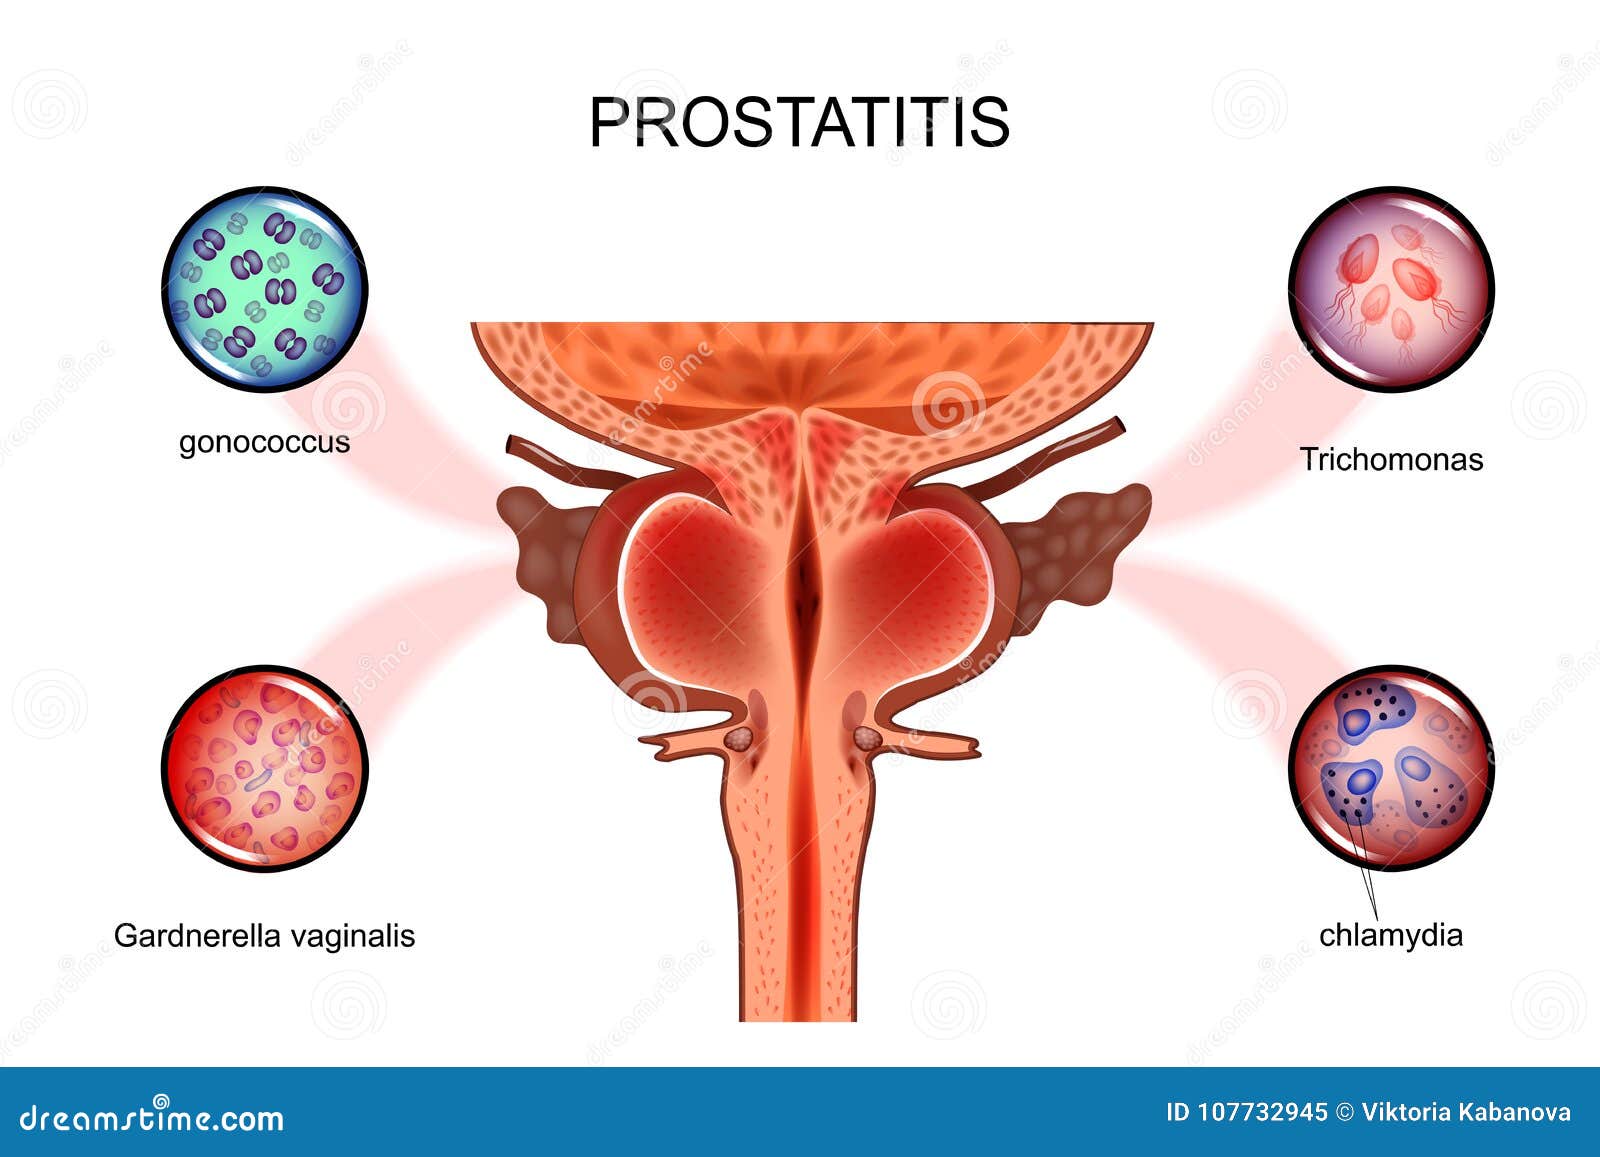 lehet a prostatitis 18 c- on prosztata gyulladás tünetek